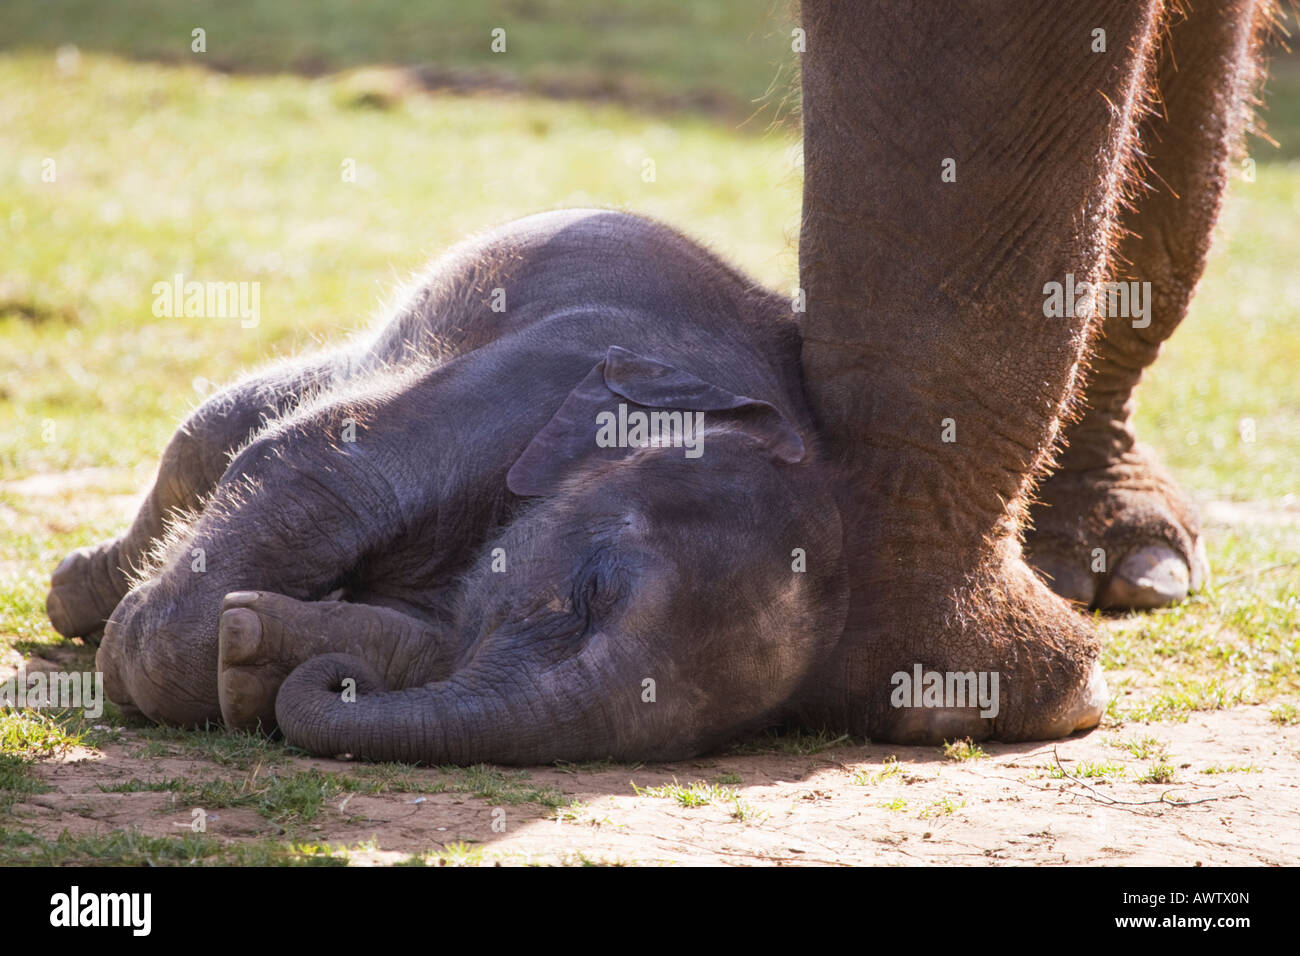 Asian elephant sleeping,Bedfordshire,England,United Kingdom Stock Photo